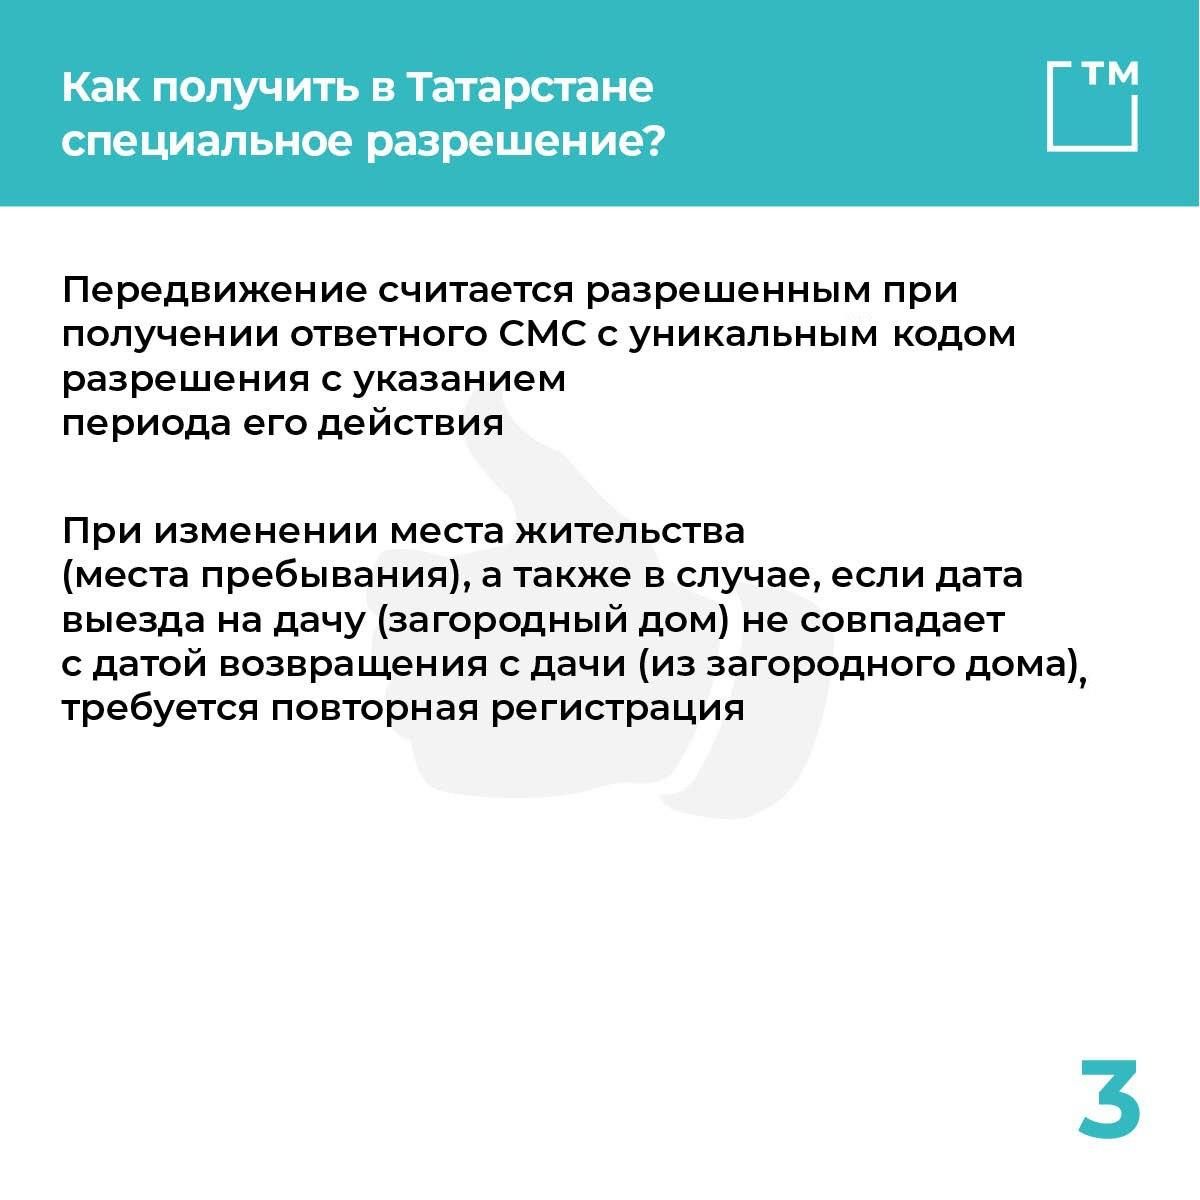 В Татарстане начала действовать горячая линия по регистрации в SMS-сервисе для самоизолированных&nbsp;